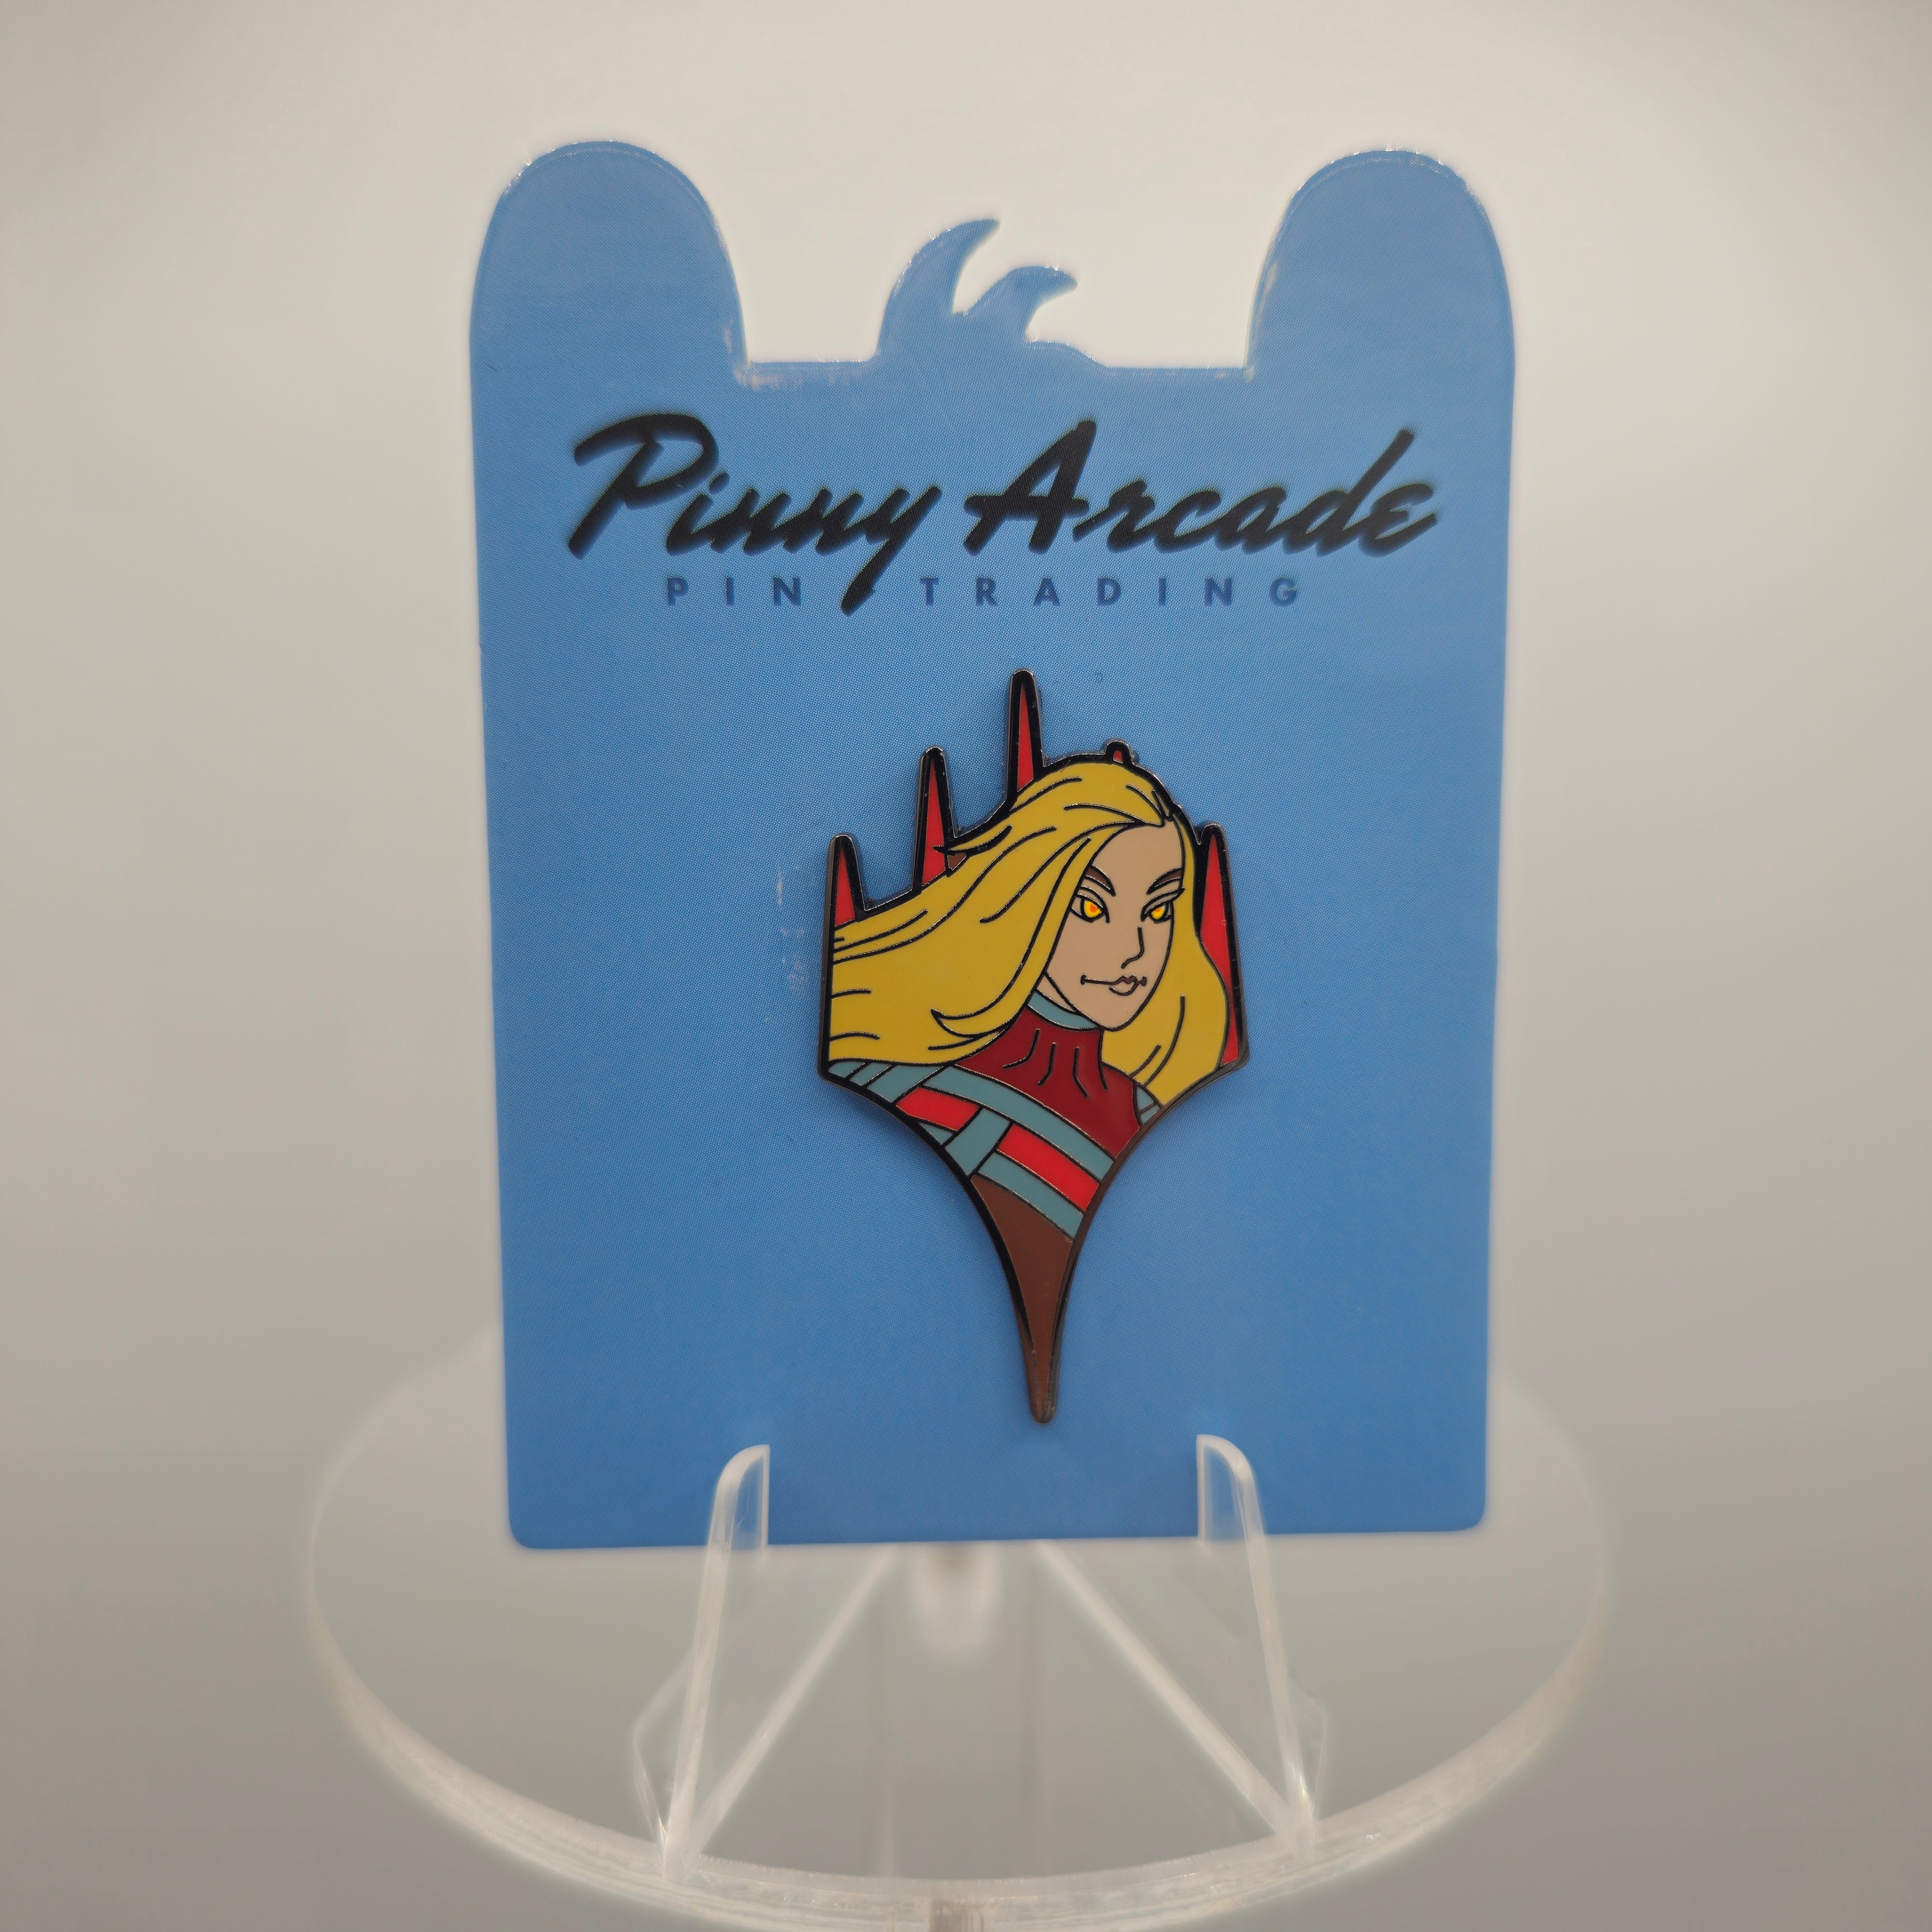 Penny Arcade Pins - Rowan Kenrith